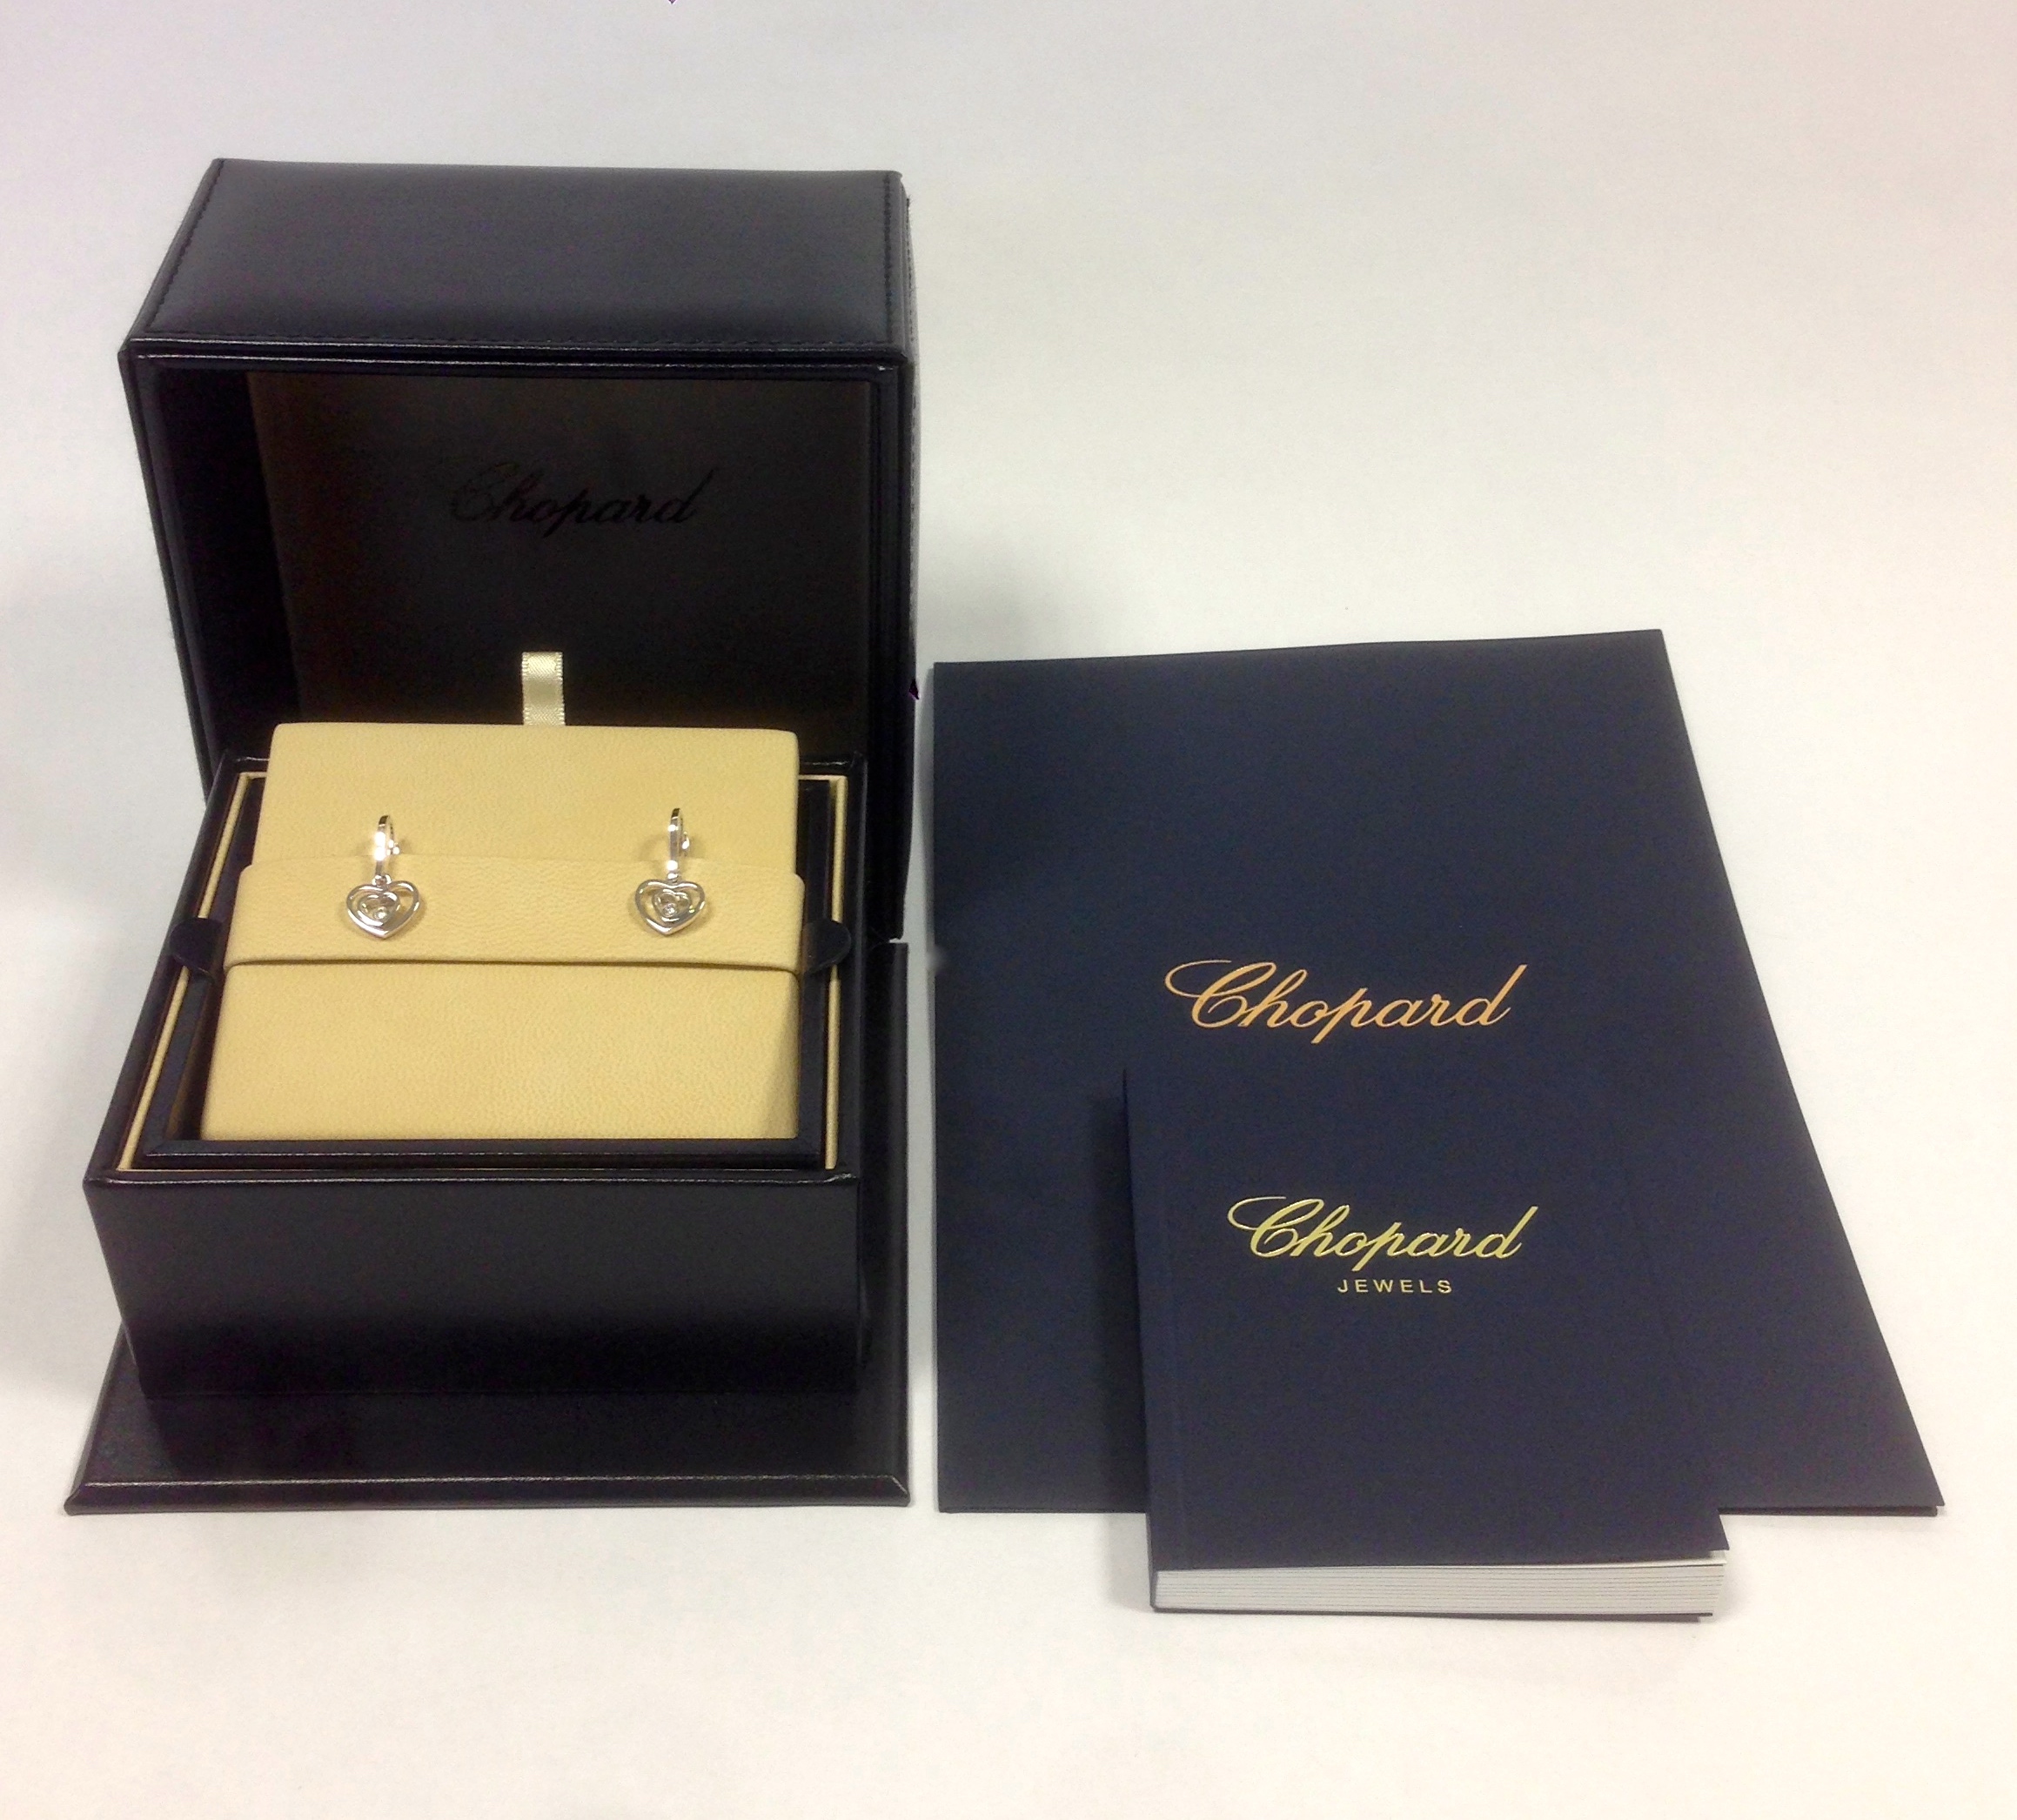 Chopard Happy Hearts Diamond Earrings